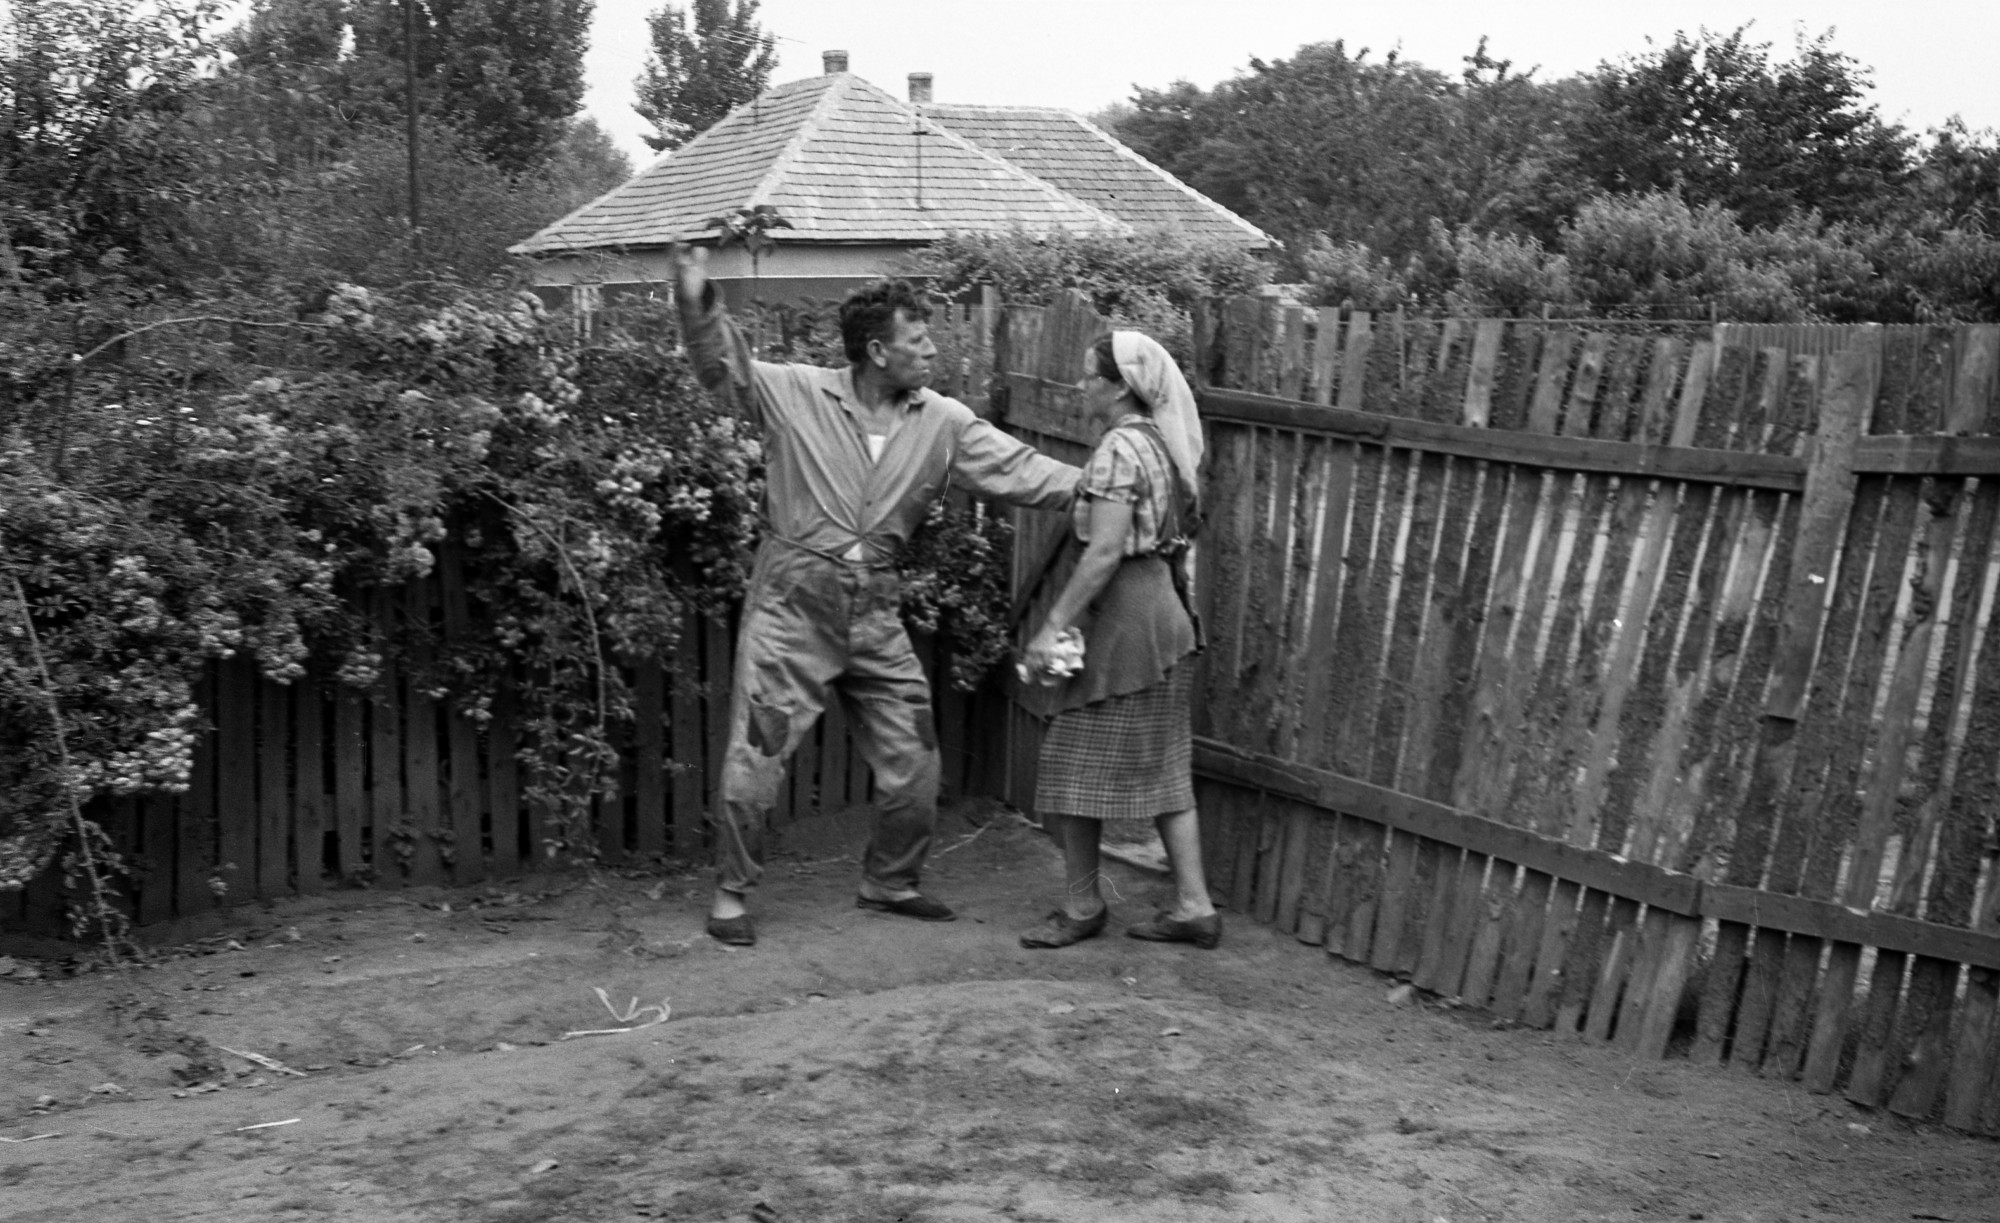 Asszonyverés a 20. századi Magyarországon, egy nem mindennapi fénykép apropóján